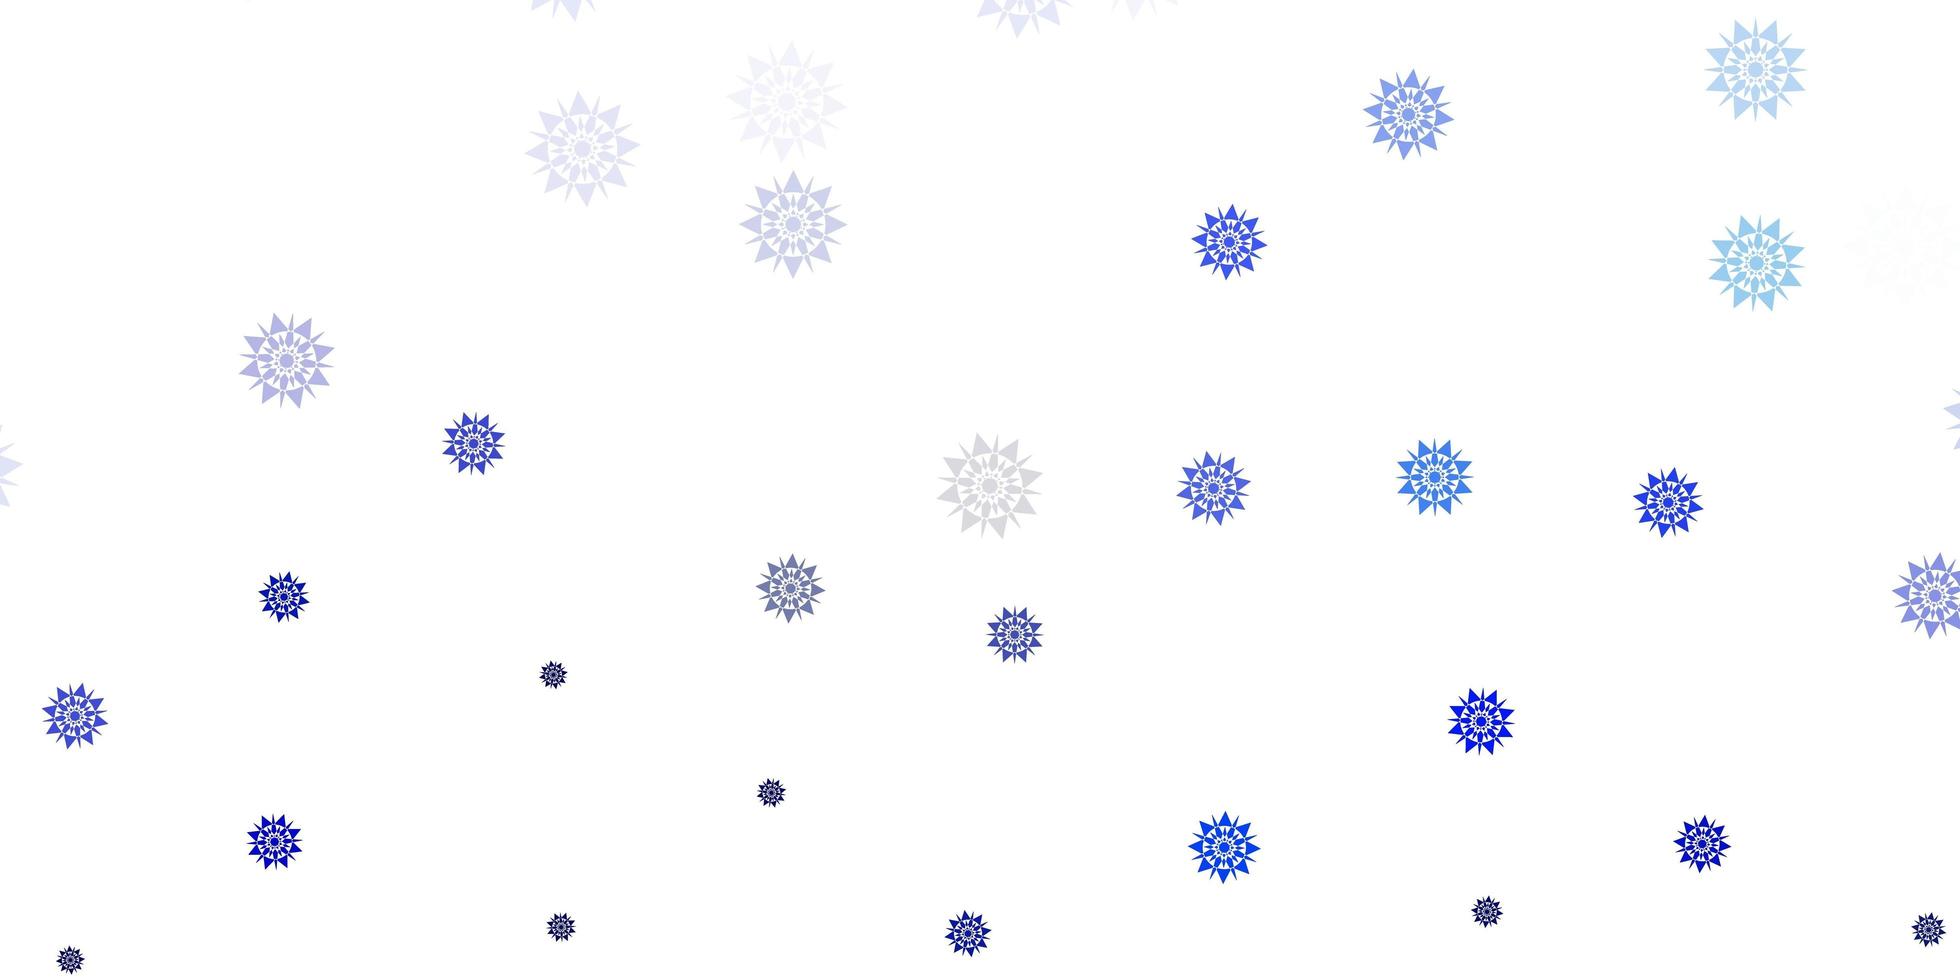 hellblaues Vektorlayout mit schönen Schneeflocken vektor